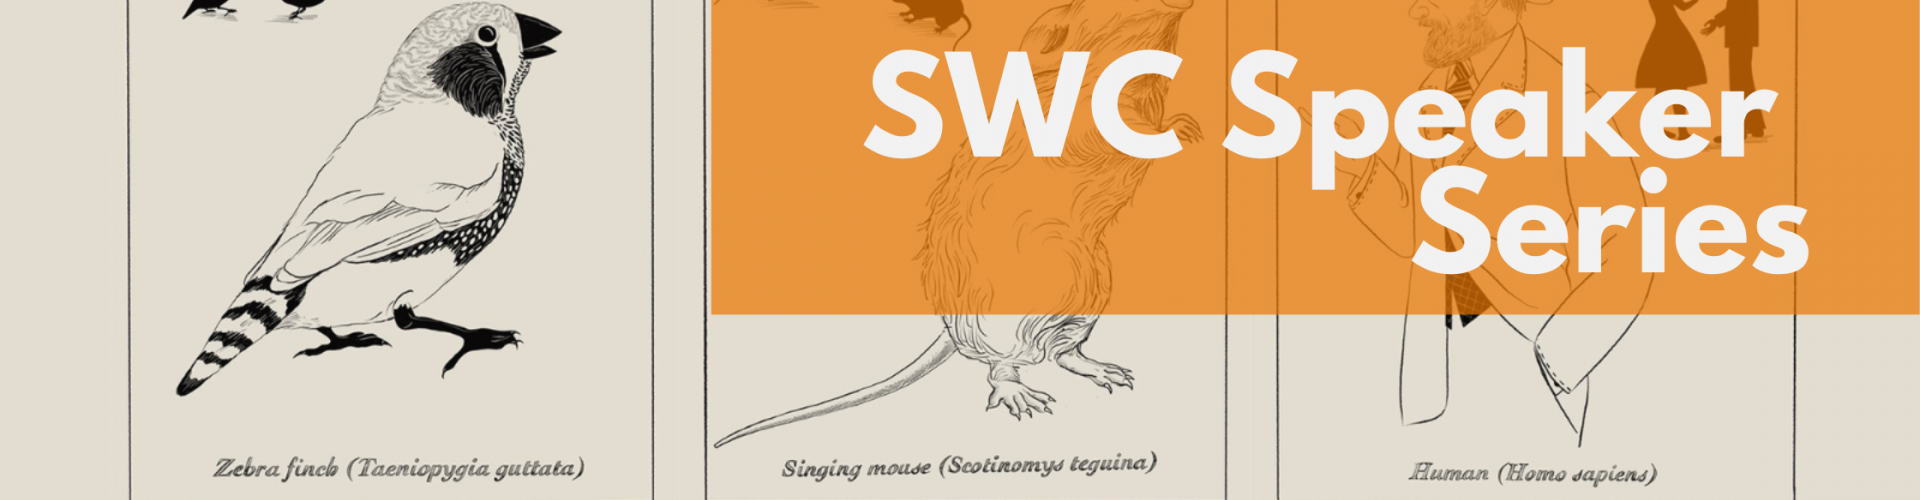 SWC Speaker series - Michael Long - Blog Banner